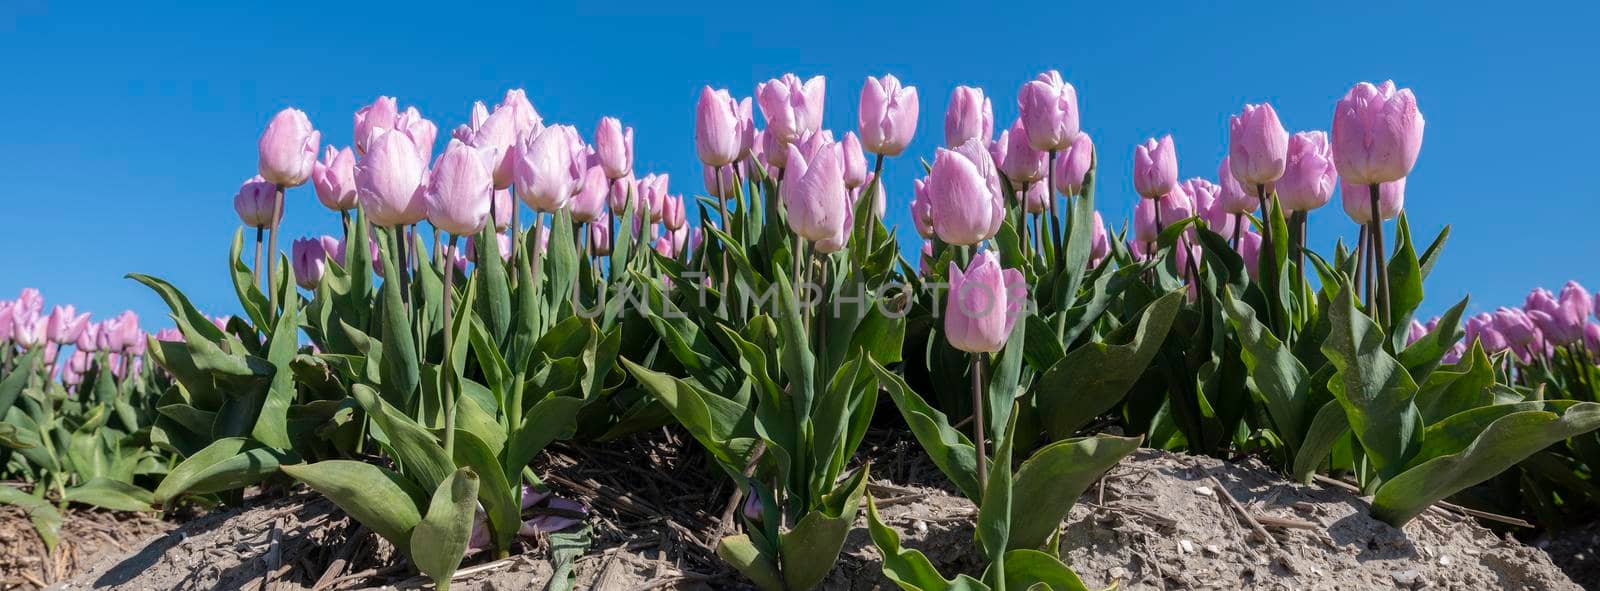 pink tulips in field under blue sky by ahavelaar